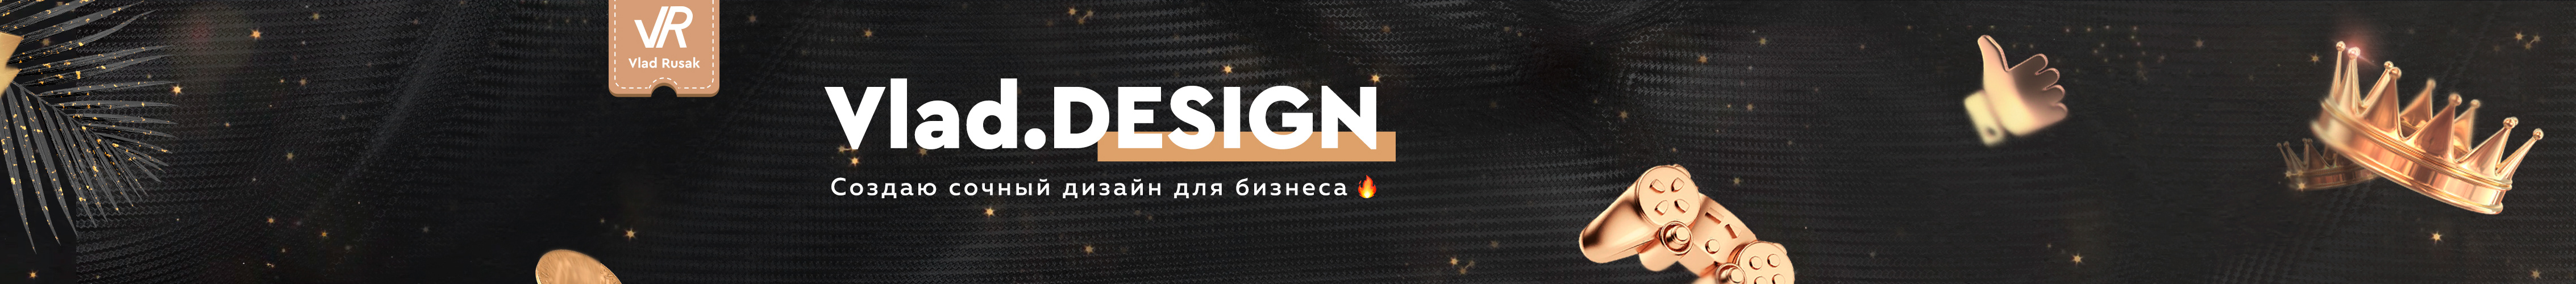 Vlad Rusakov's profile banner